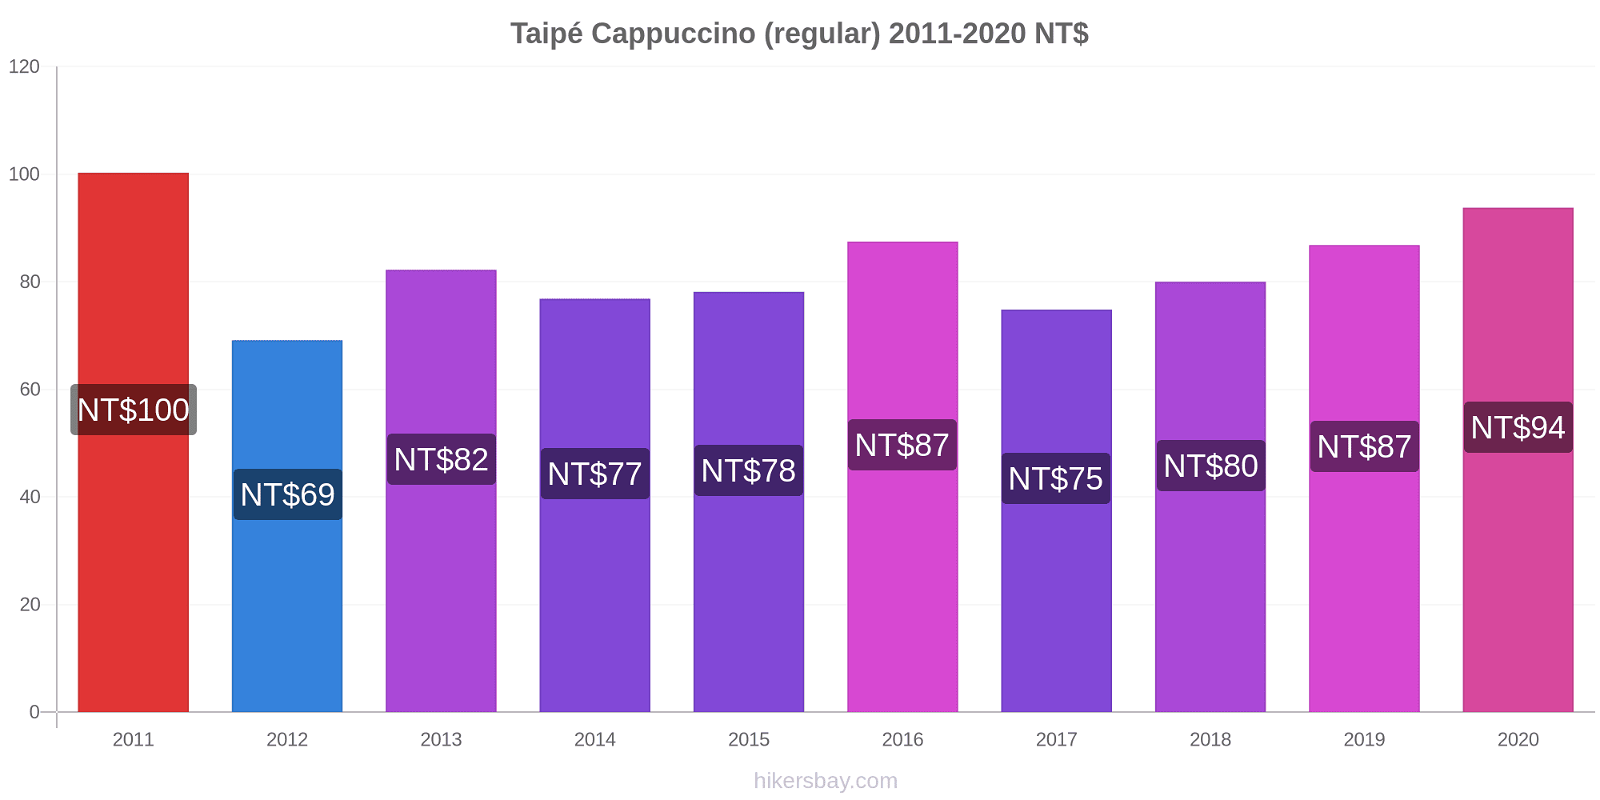 Taipé variação de preço Capuccino (regular) hikersbay.com